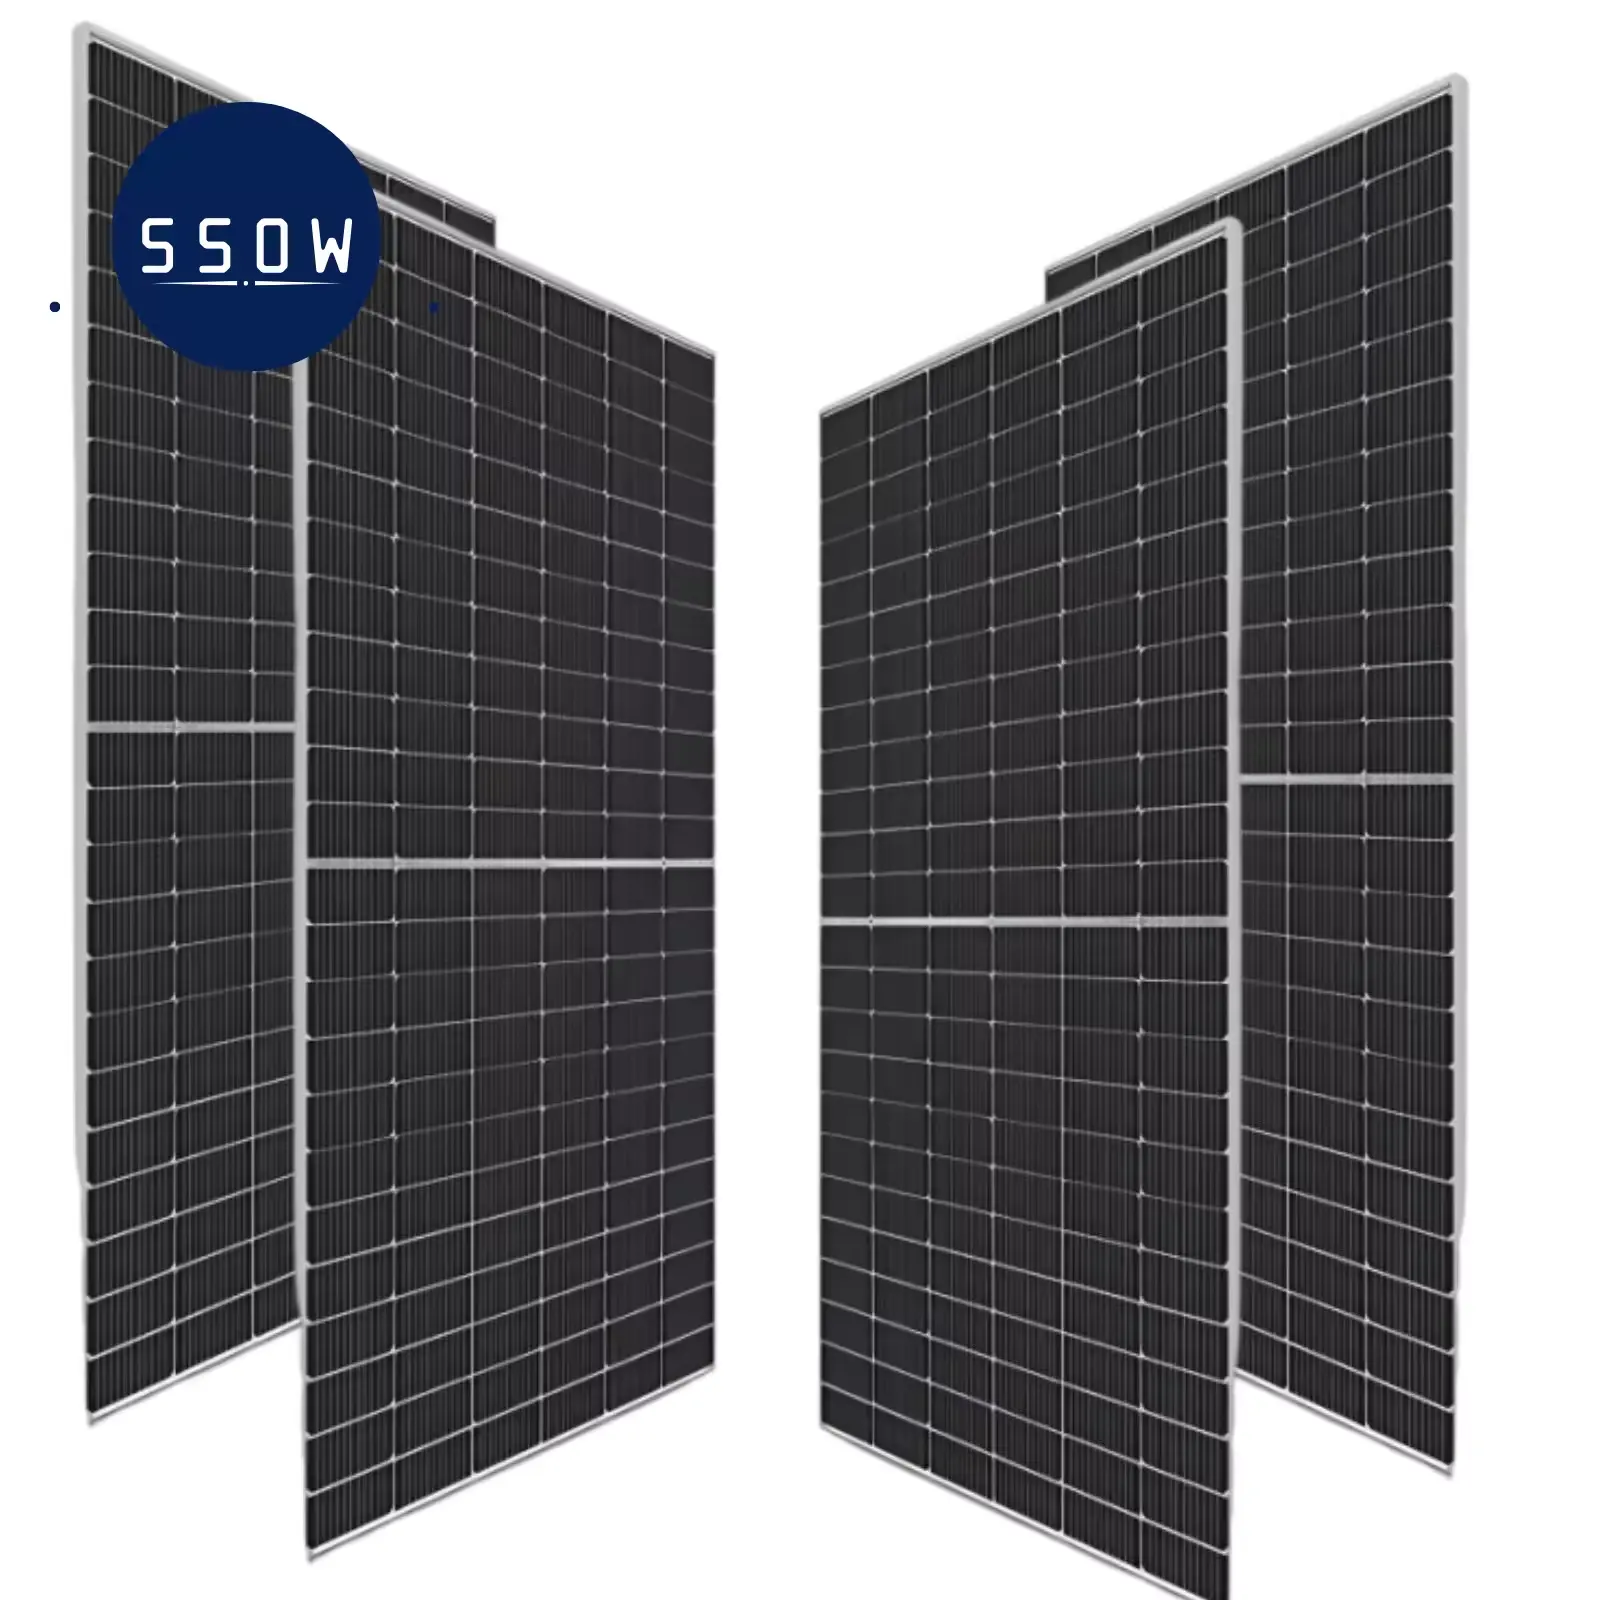 Hiệu quả cao 550W Bảng điều khiển năng lượng mặt trời giá rẻ có tấm pin mặt trời trên ngôi nhà của bạn